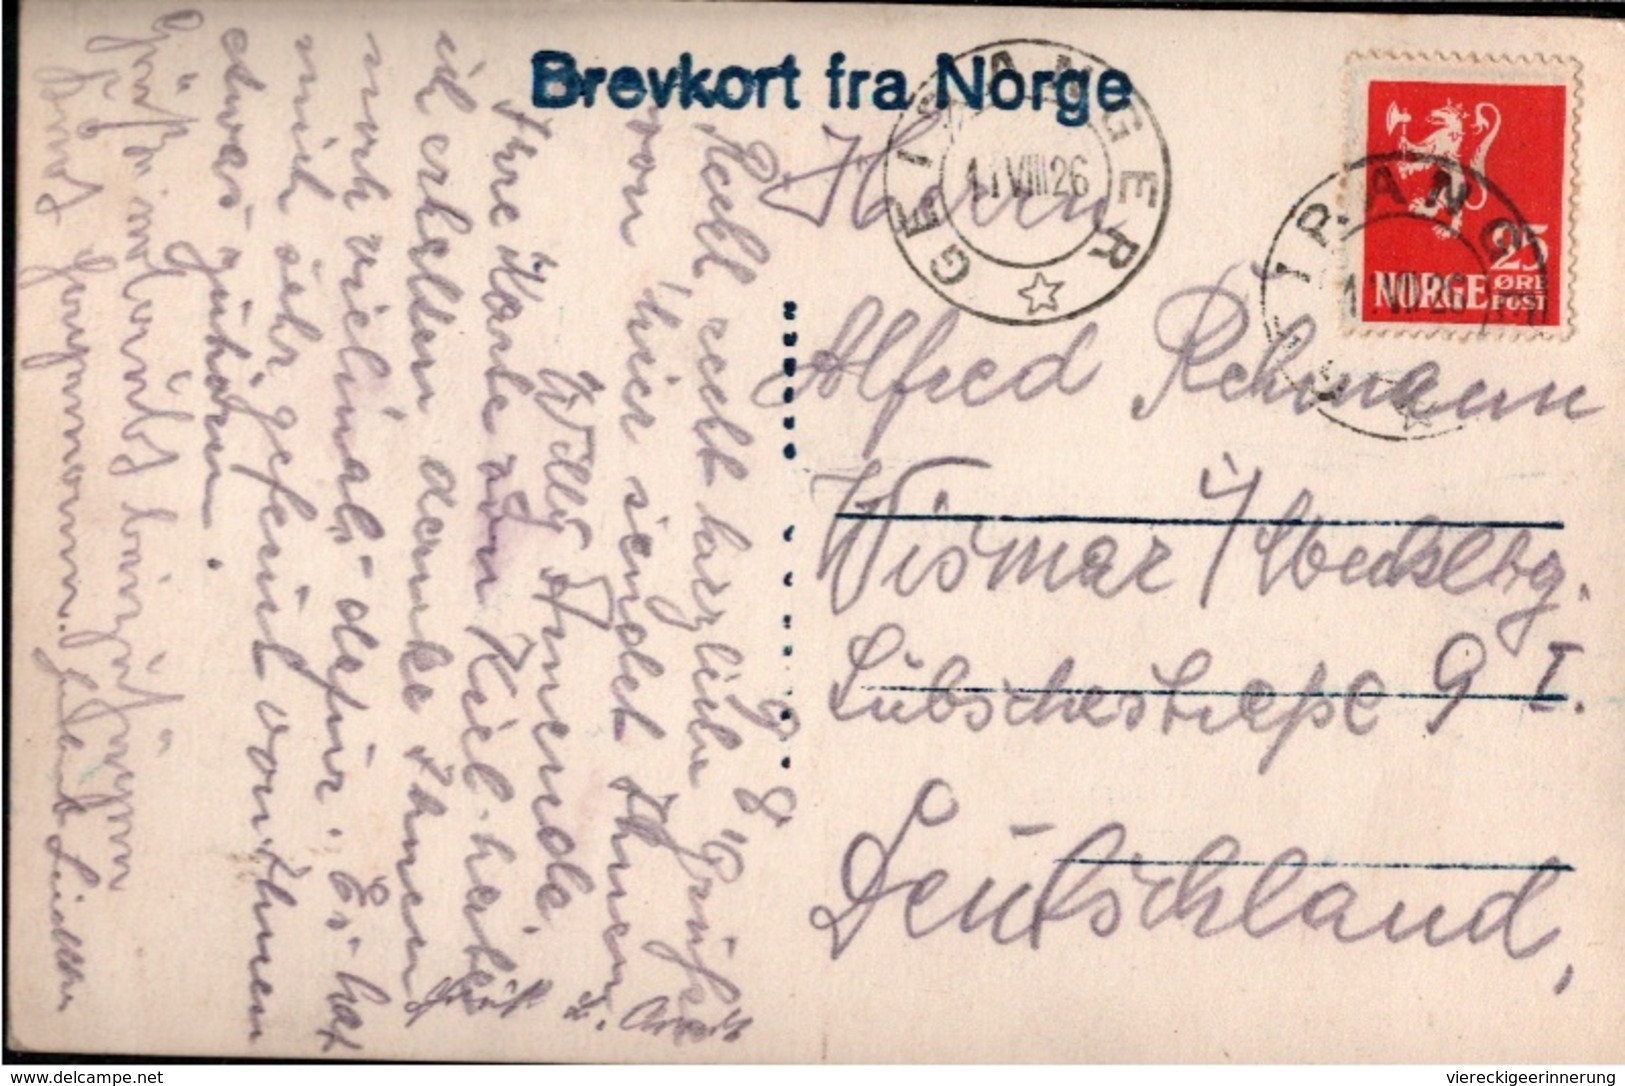 ! Alte Ansichtskarte Aus Djupvandshytten, Norwegen, Norway, Norge, 1926, Geiranger - Norway